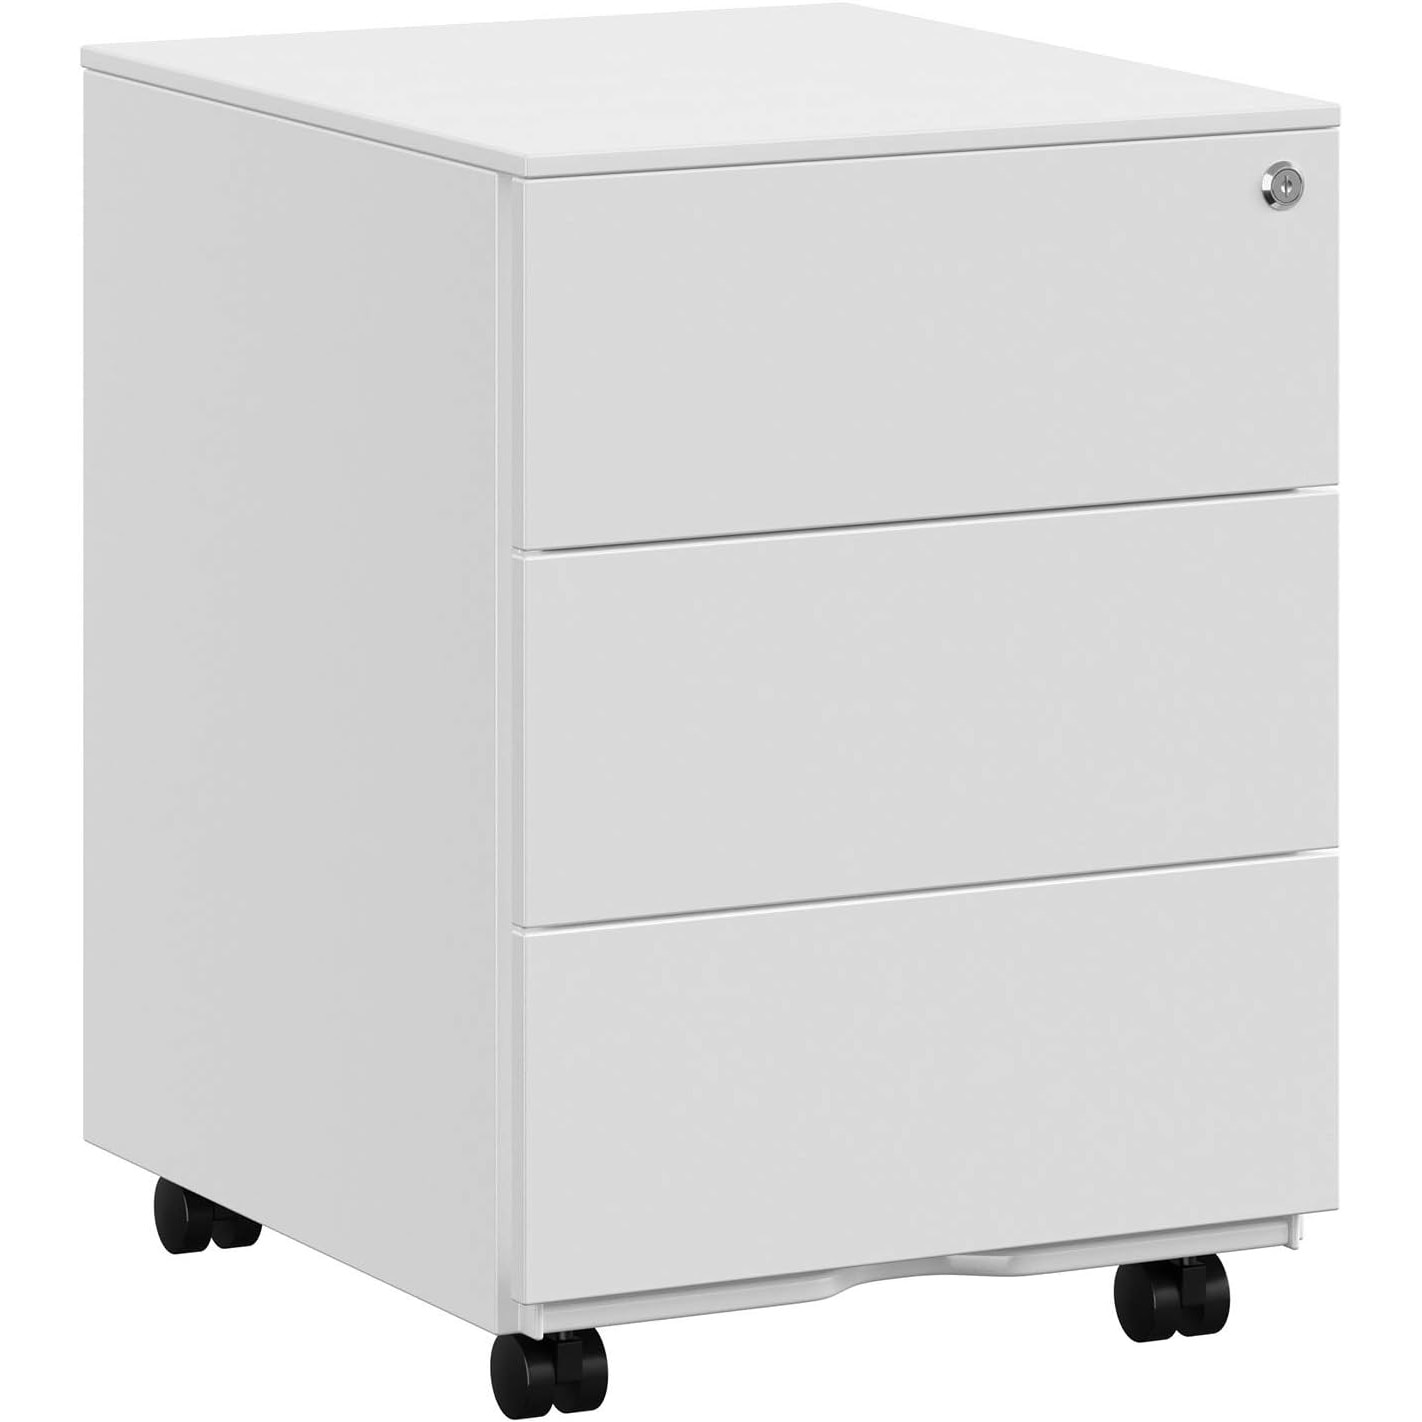 x Rollbox pentru 55 cu cm, incuietoare, capse, sertare 39 3 cu agrafe metalic x dedicat alb metal, 45 si birou, suport pentru